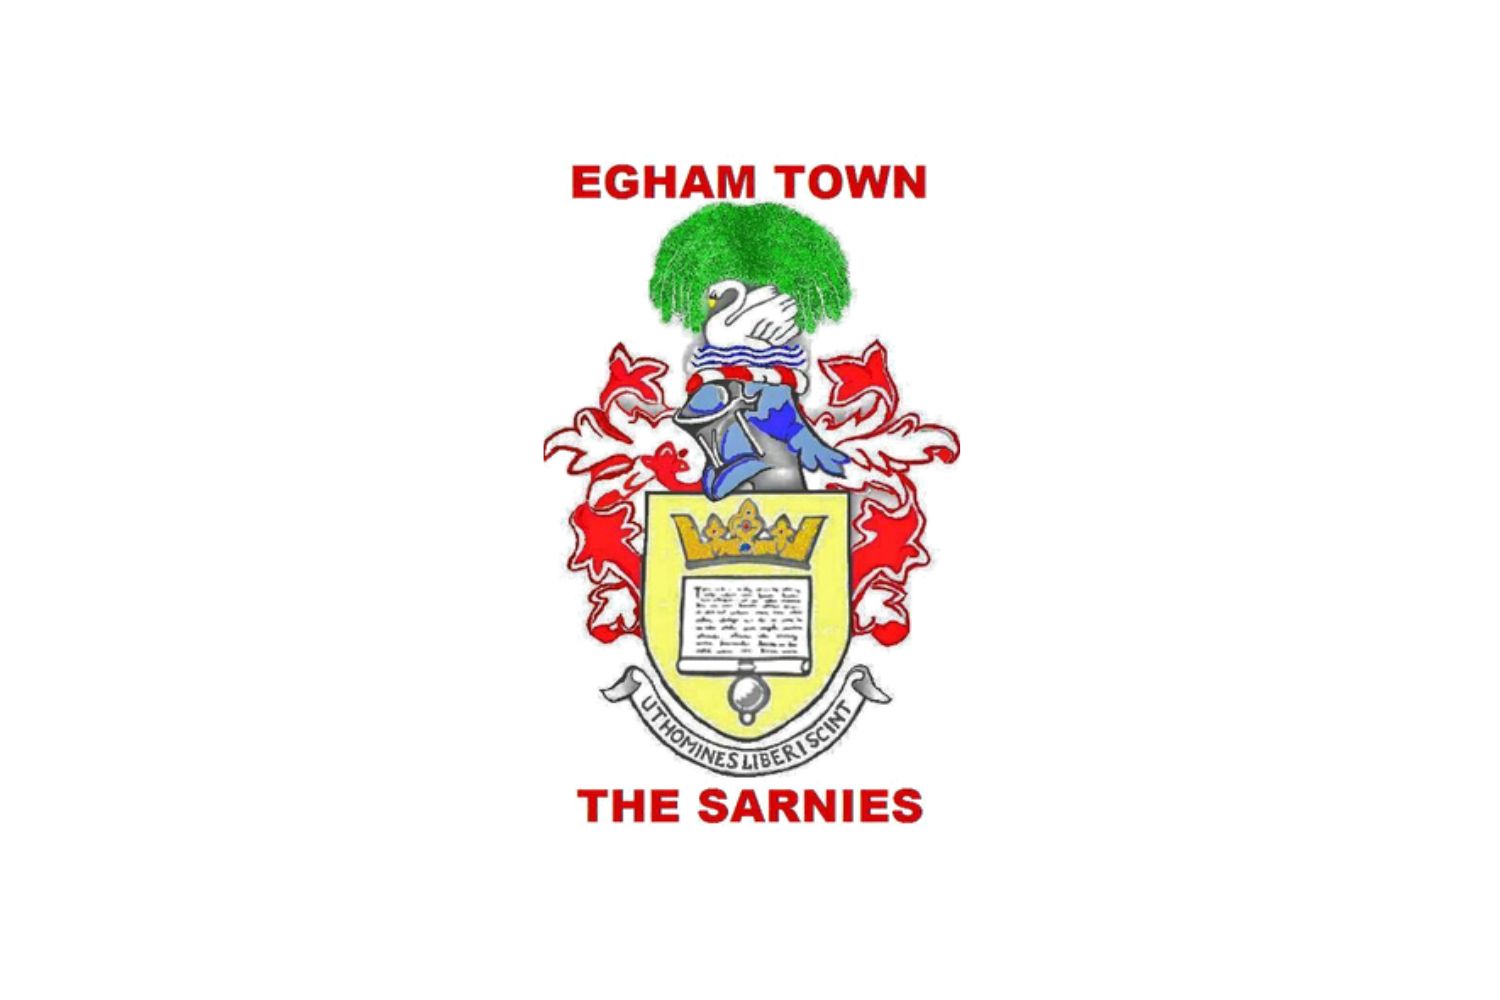 egham-town-fc-25-football-club-facts